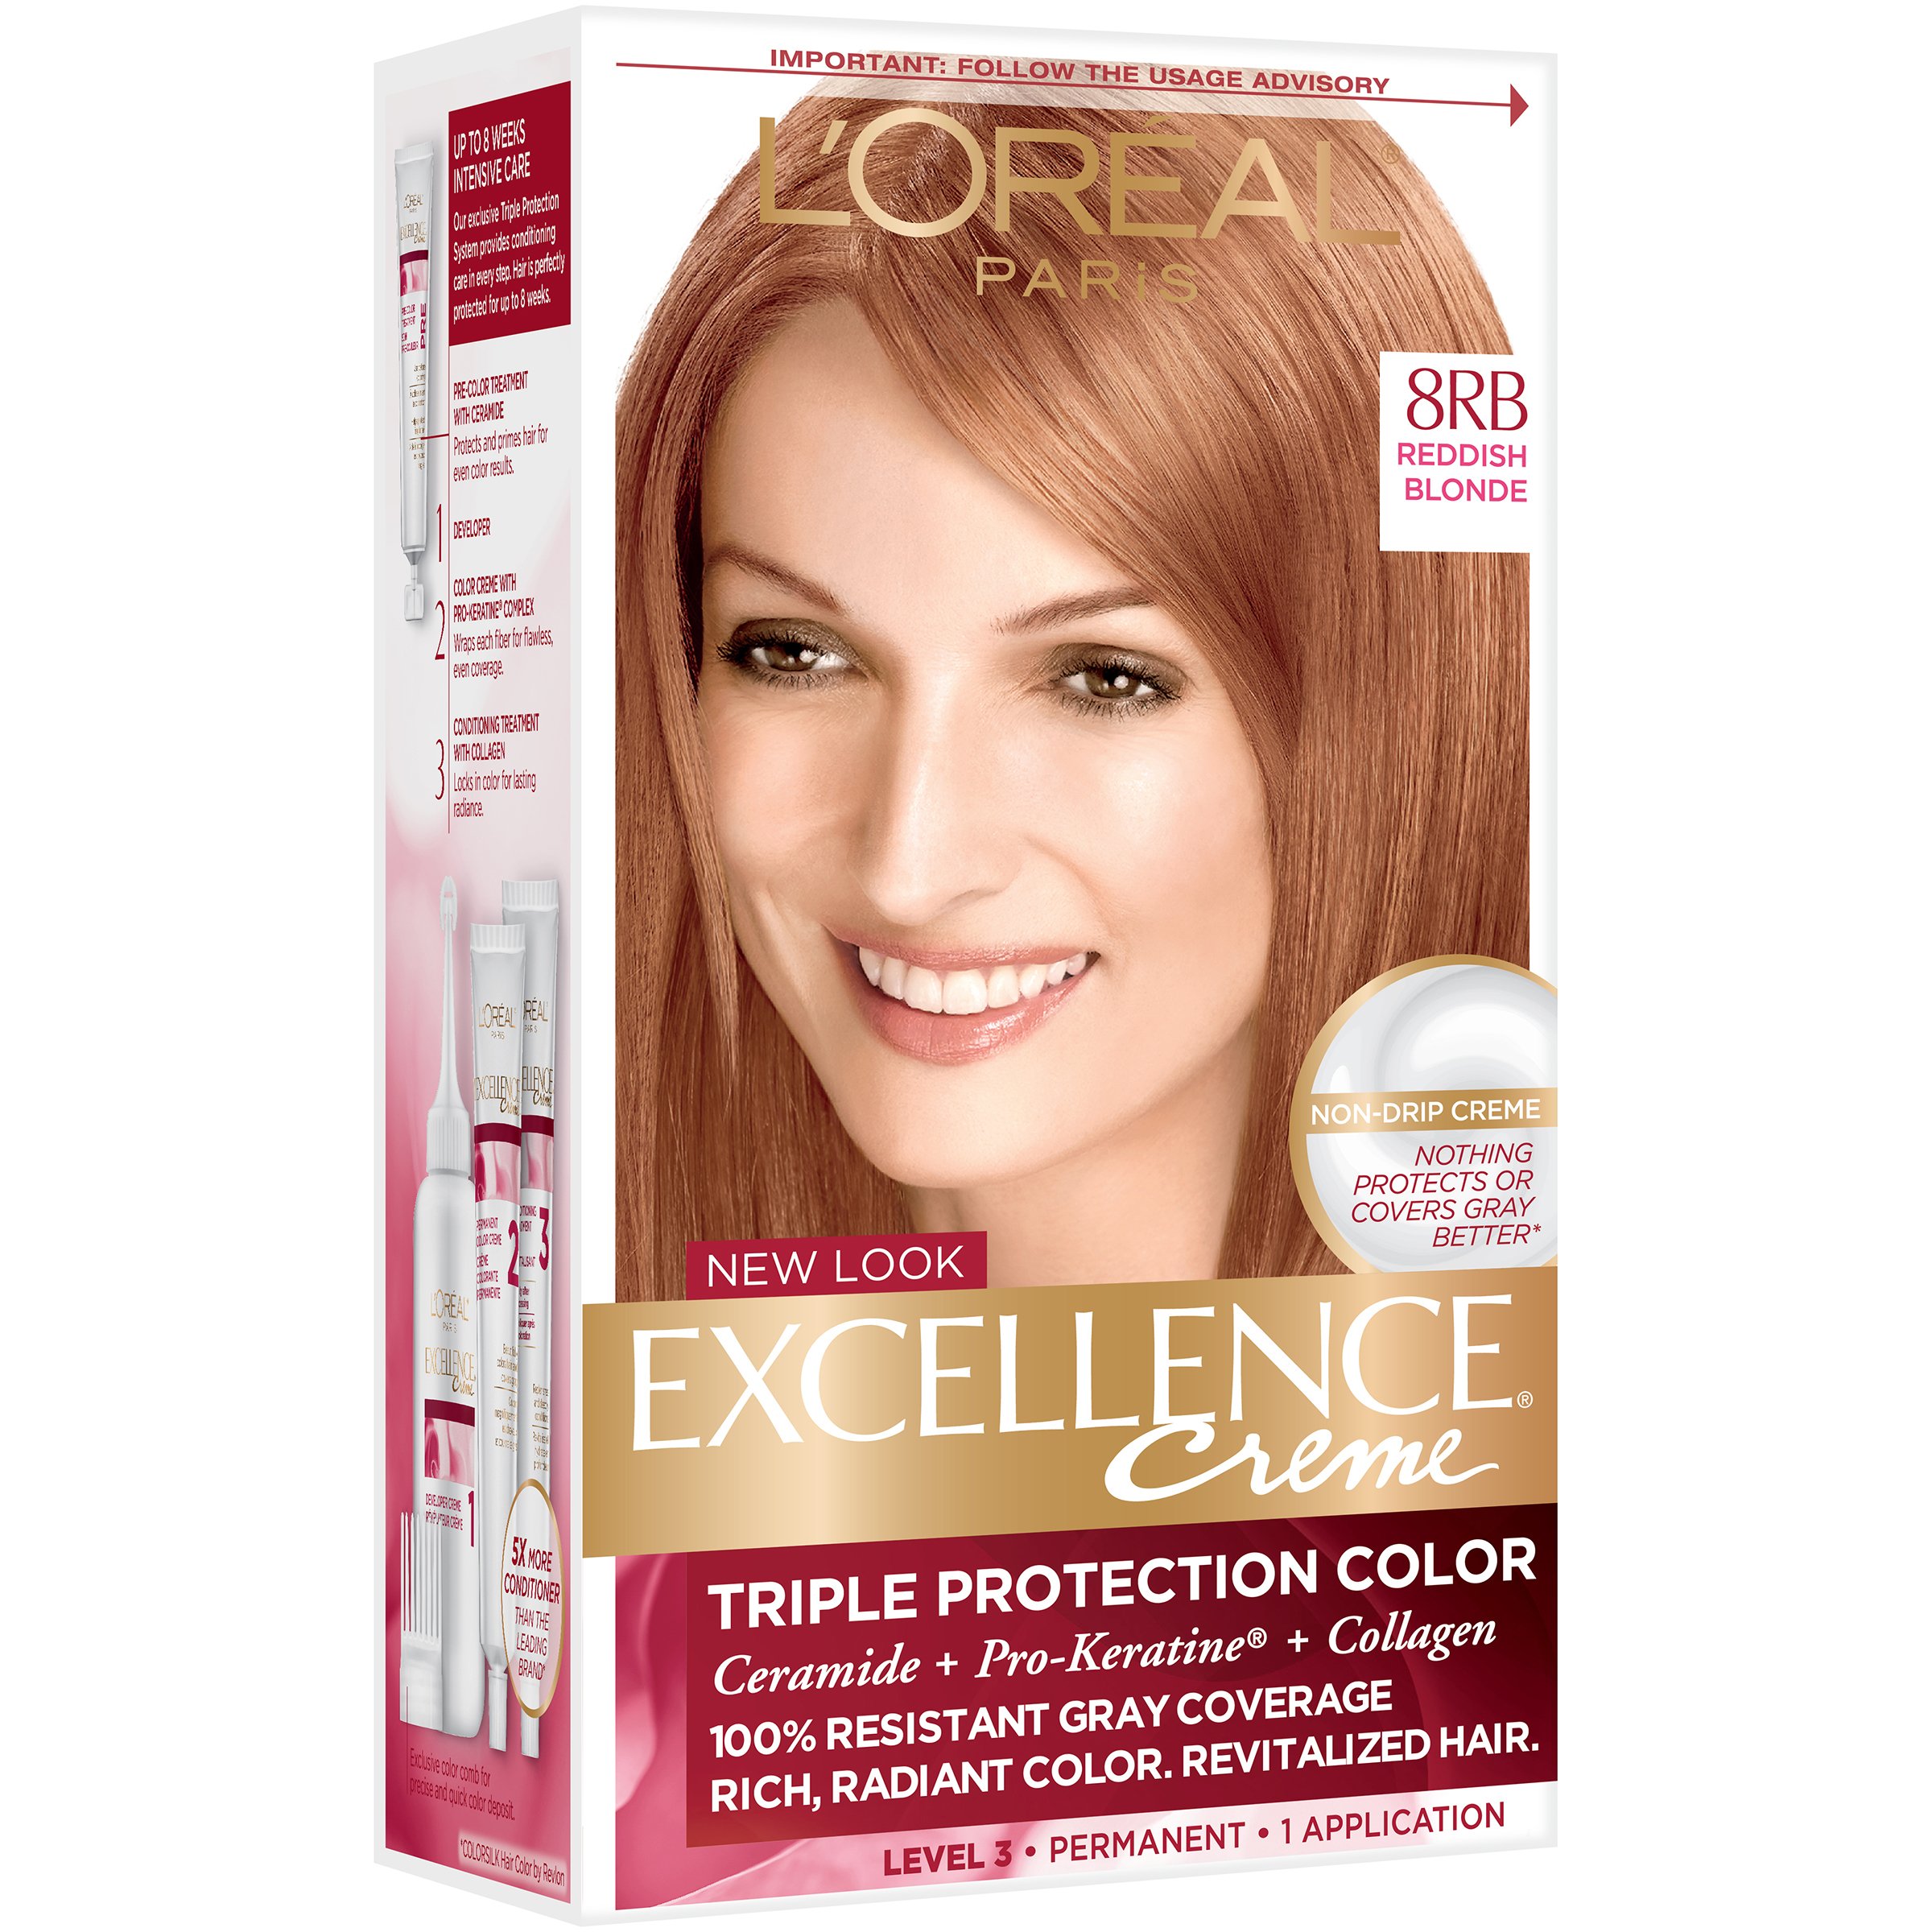 L'Oréal Paris Excellence Créme Permanent Hair Color, 8RB Medium Reddish Blonde - Shop Hair Care H-E-B